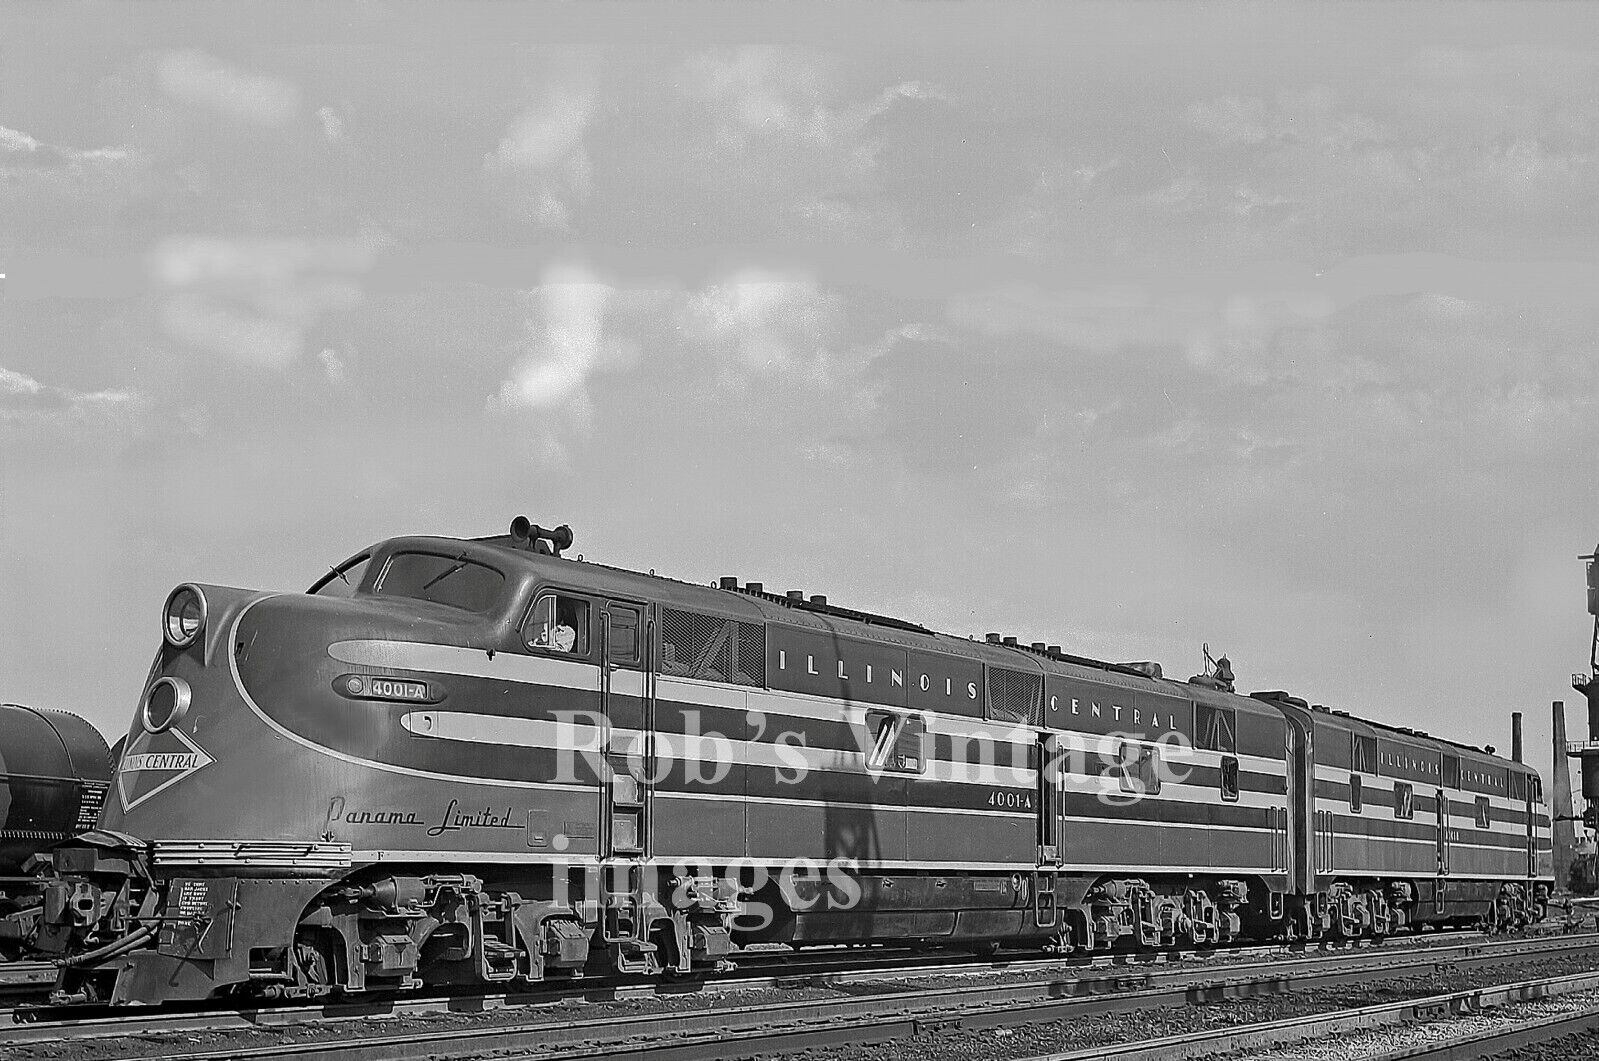 Illinois Central Photo Panama Limited E6A Locomotive 4001A Railroad train s